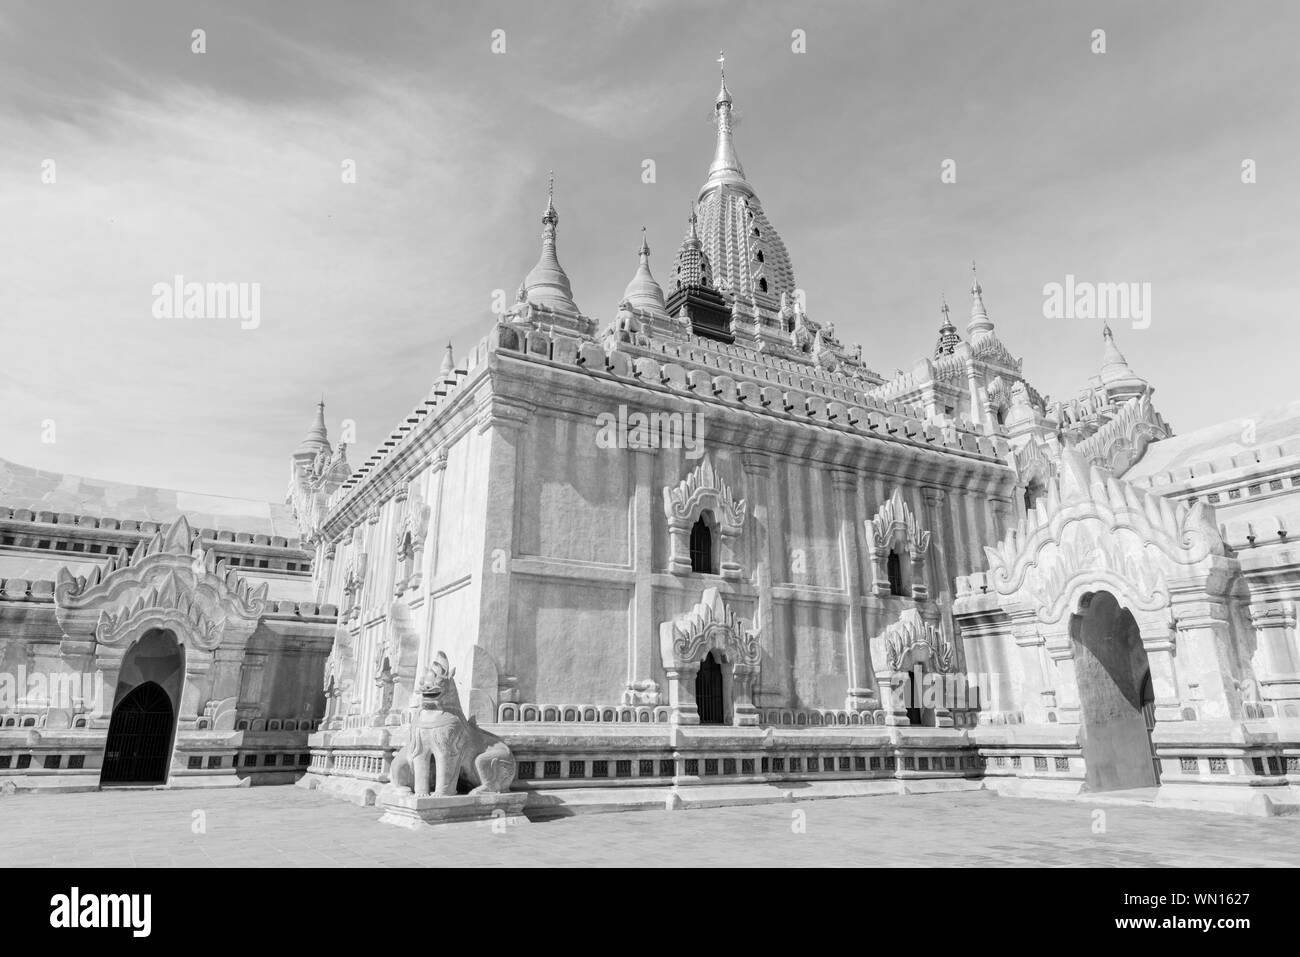 Immagine in bianco e nero di architettura di Tempio di Ananda, un famoso tempio buddista di Bagan, Myanmar Foto Stock